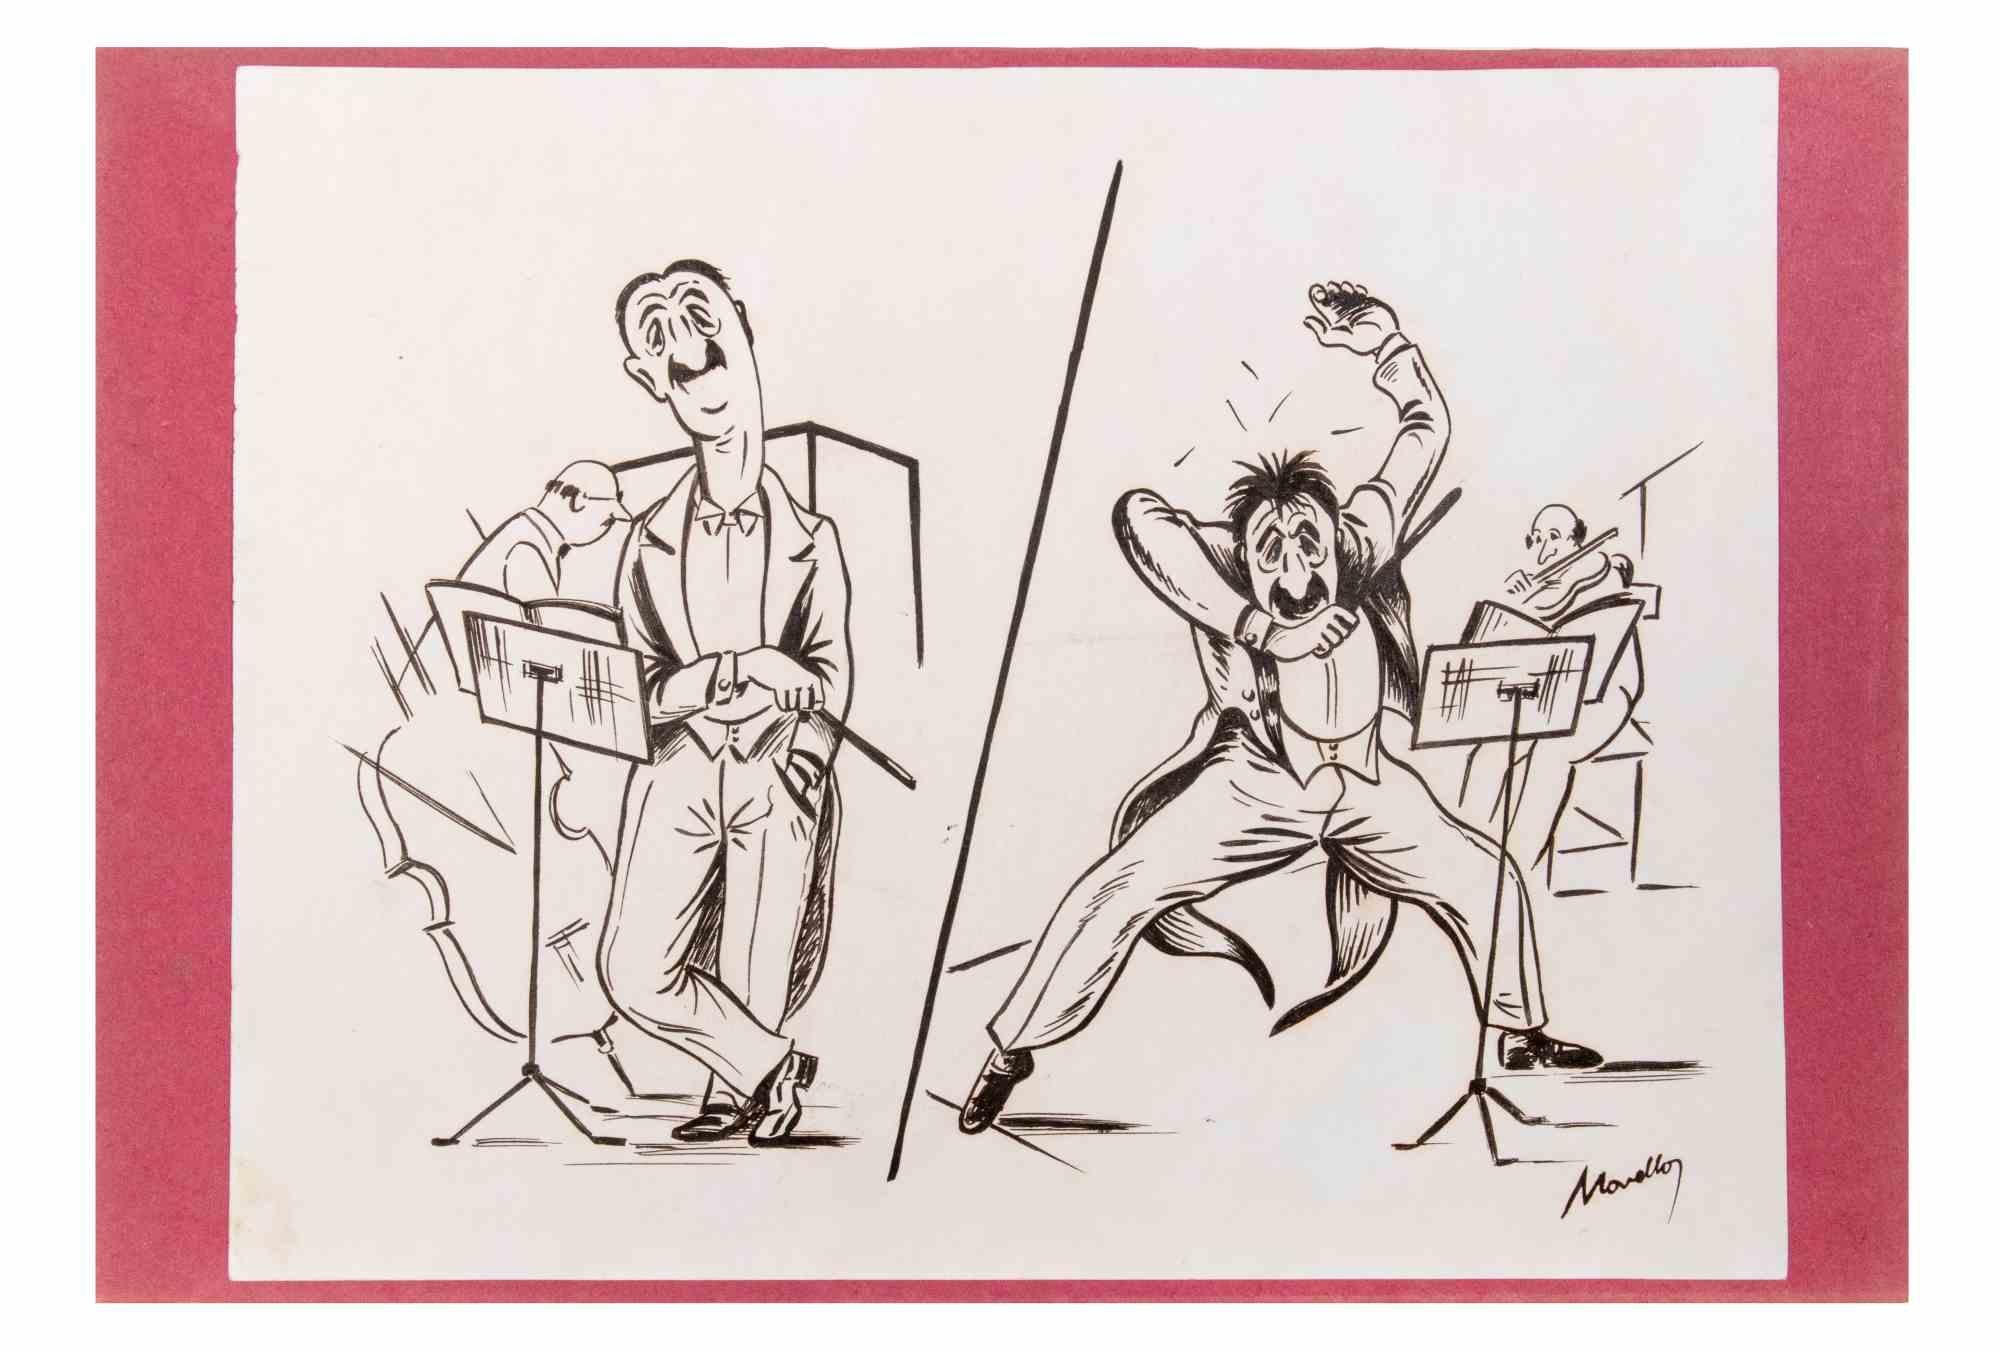 Zeichnung von Novello für den Zeichentrickfilm "Der Dirigent" über Verdi, Wagner und den Walzer "Du sollst mich nicht so lieben".

Tuschezeichnung. Handsigniert unten rechts. 21x30 cm. Gute Bedingungen.